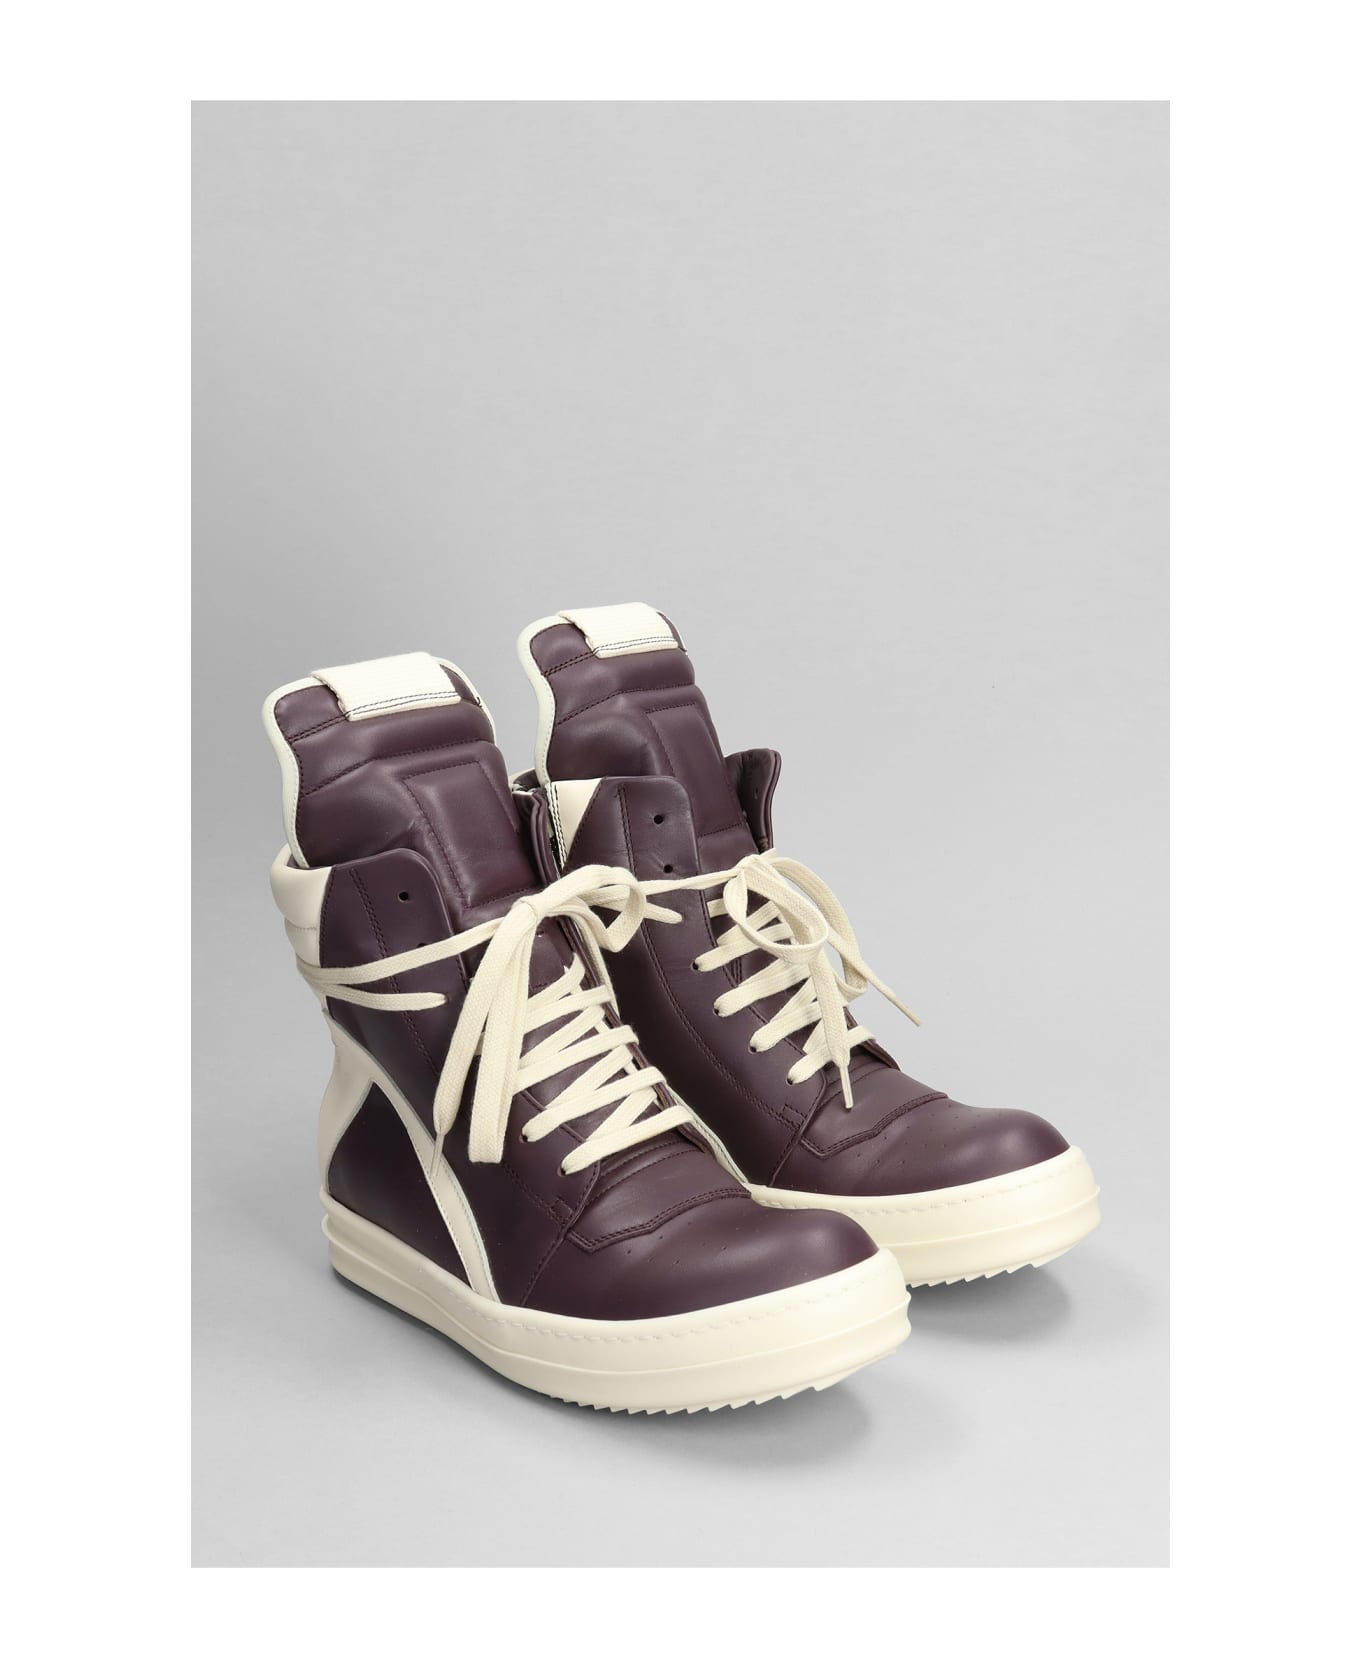 Rick Owens Geobasket Sneakers In Viola Leather - AMETISTA/MILK/MILK